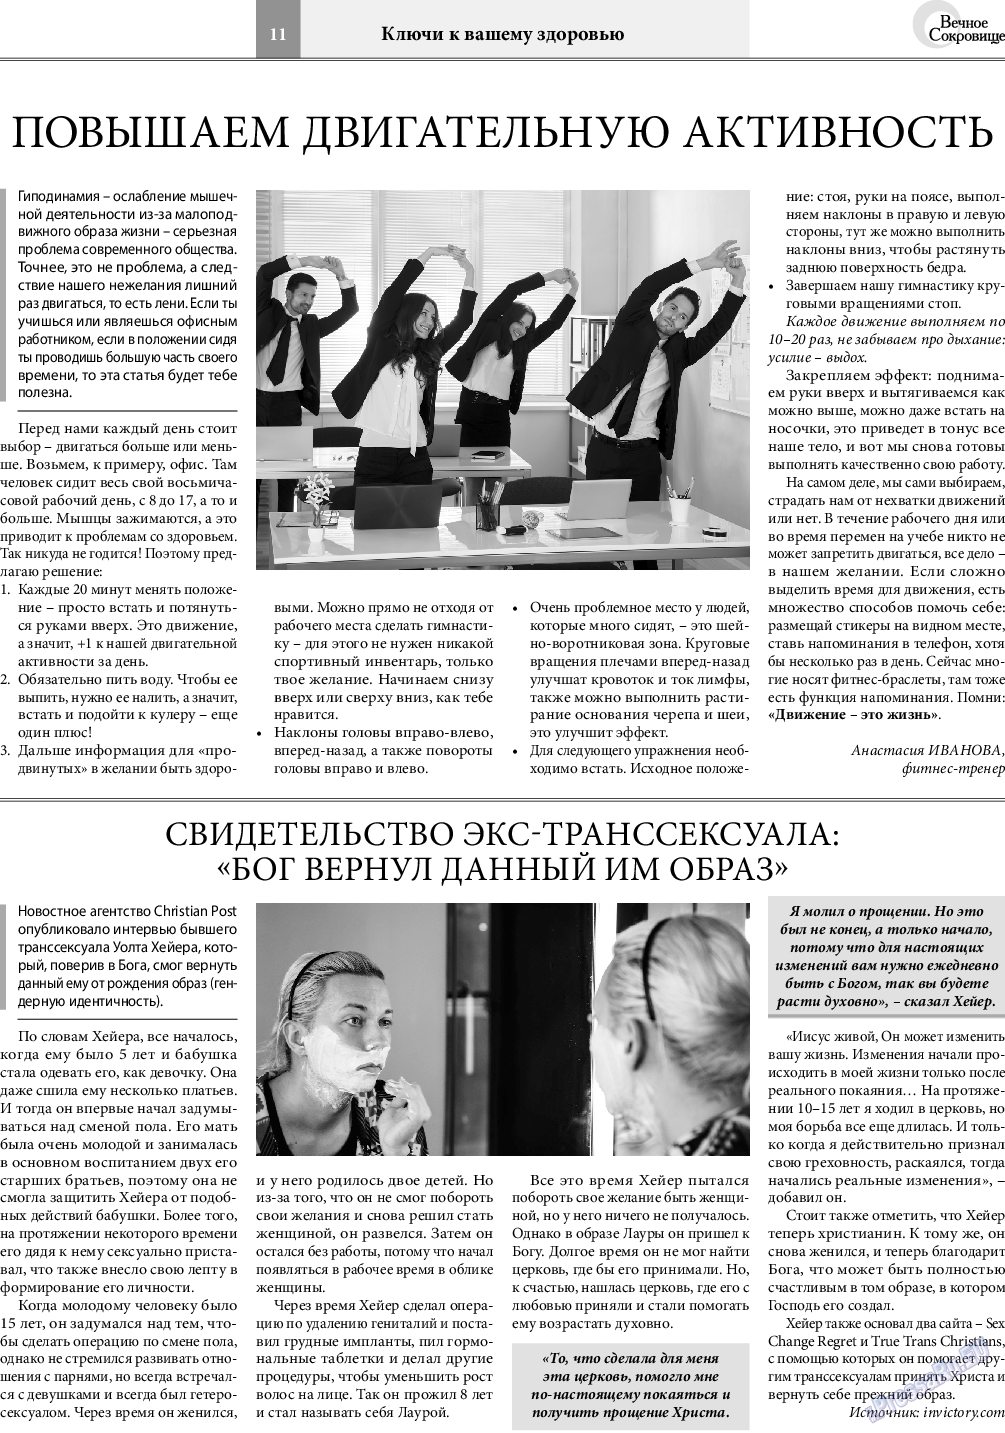 Вечное сокровище, газета. 2019 №6 стр.11